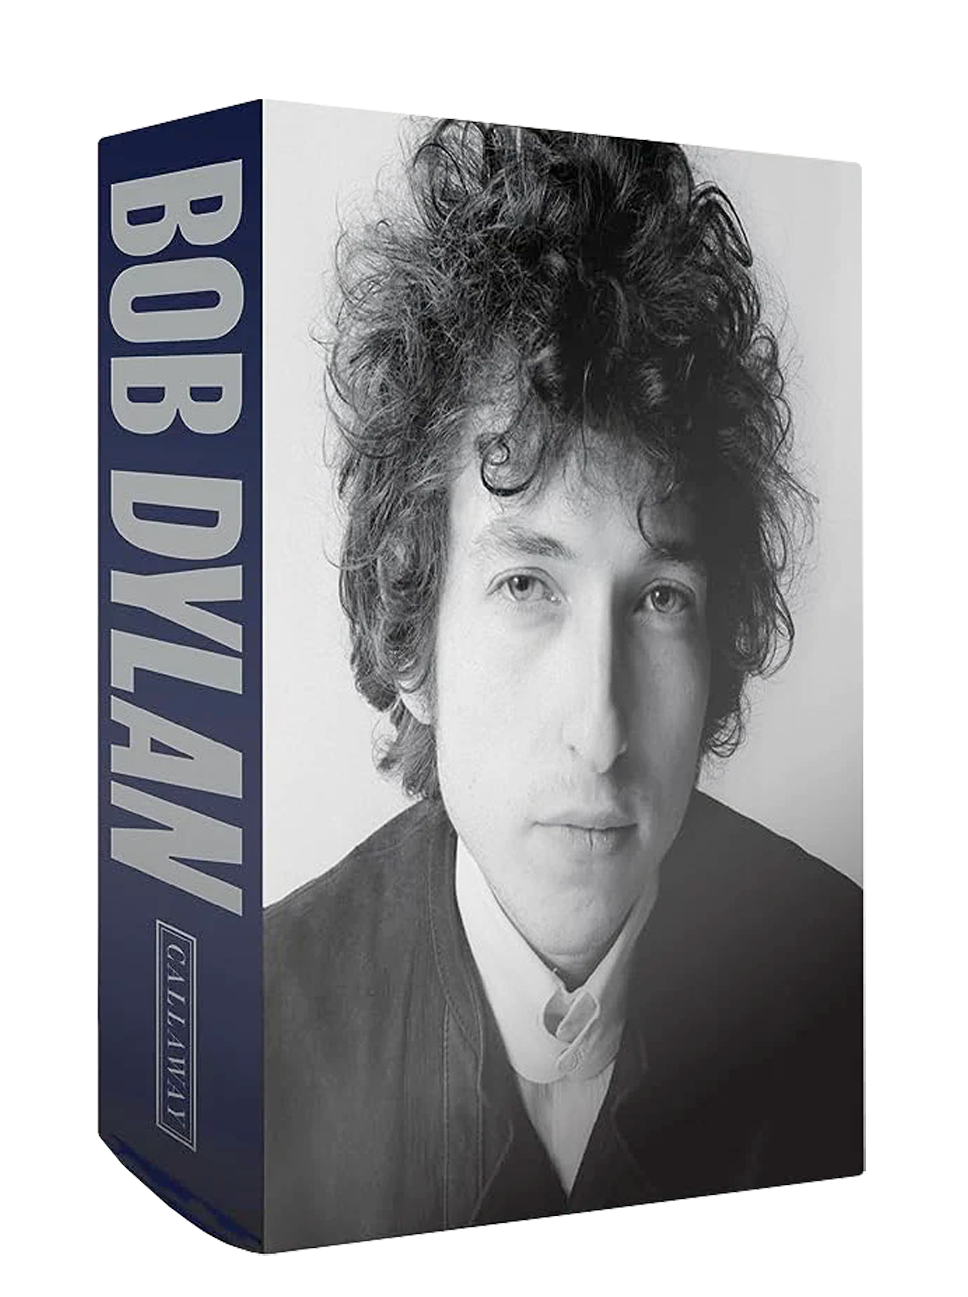 Bob Dylan: Mixing Up The Medicine – Heaven's Door